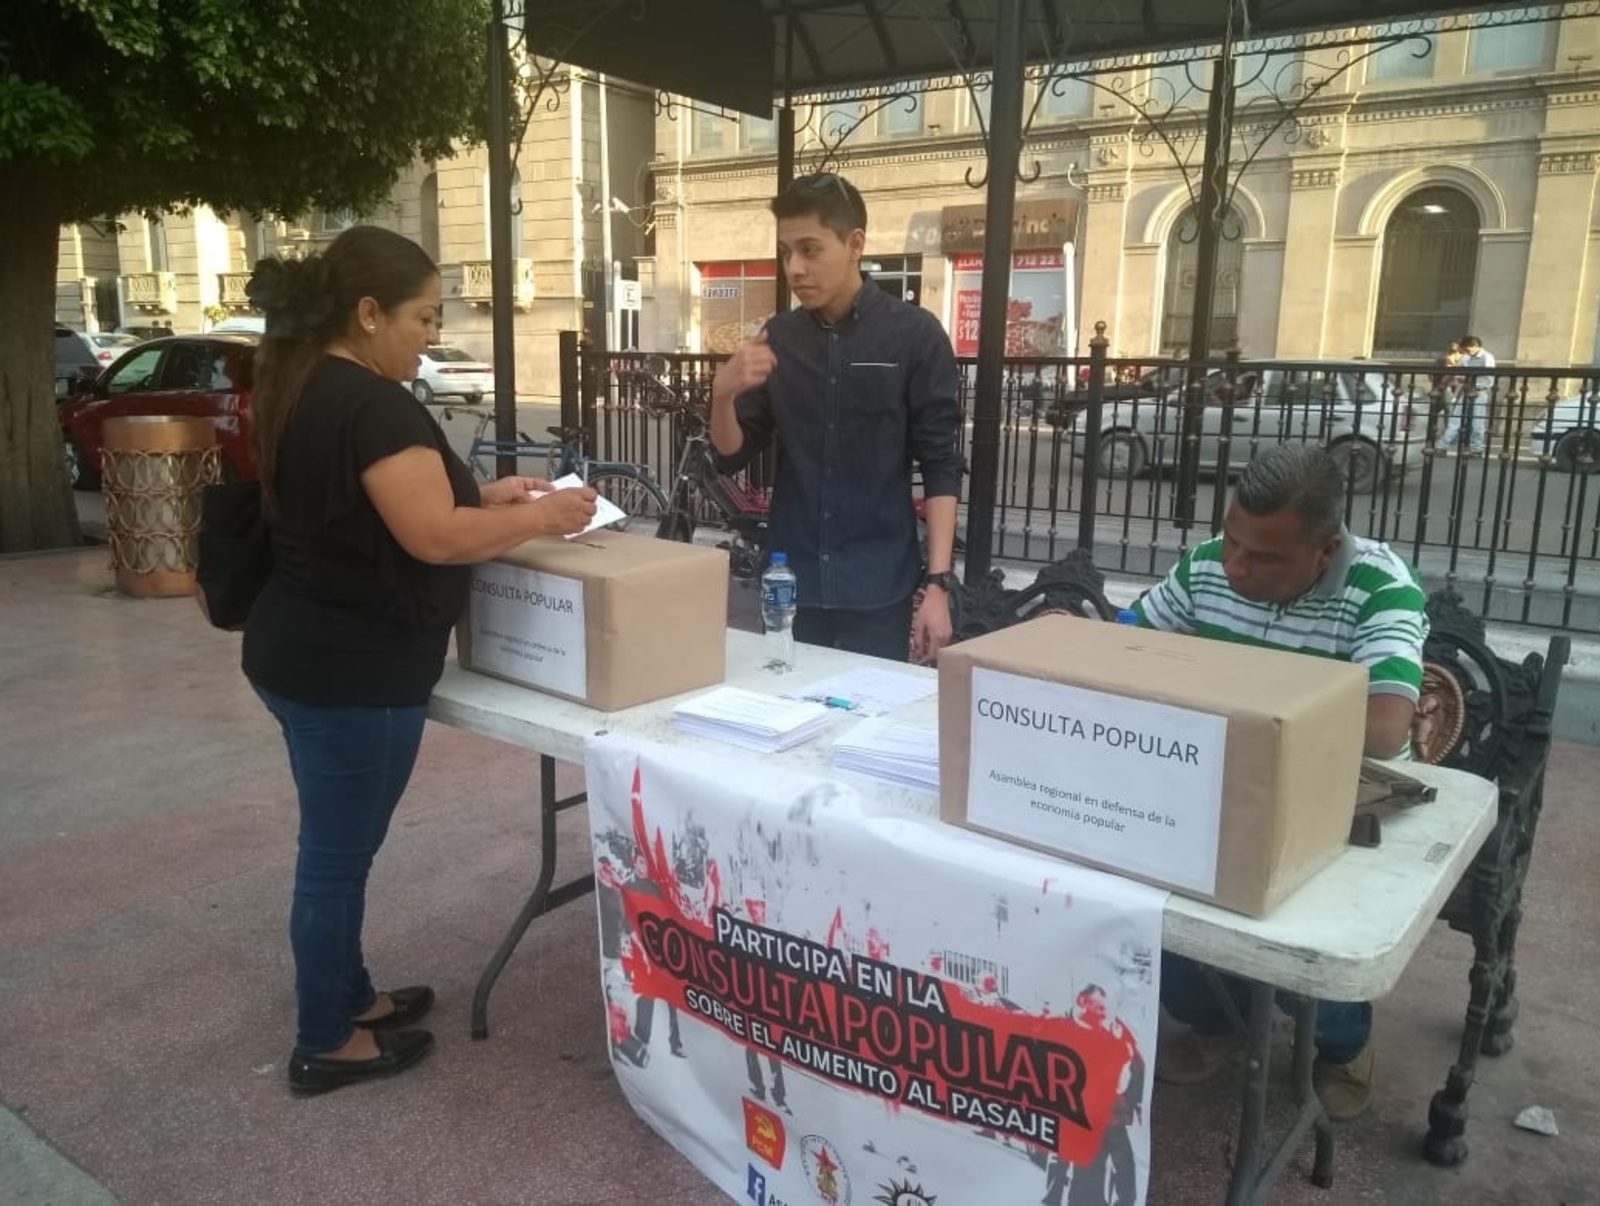 Hacen consulta por aumento al pasaje en Torreón